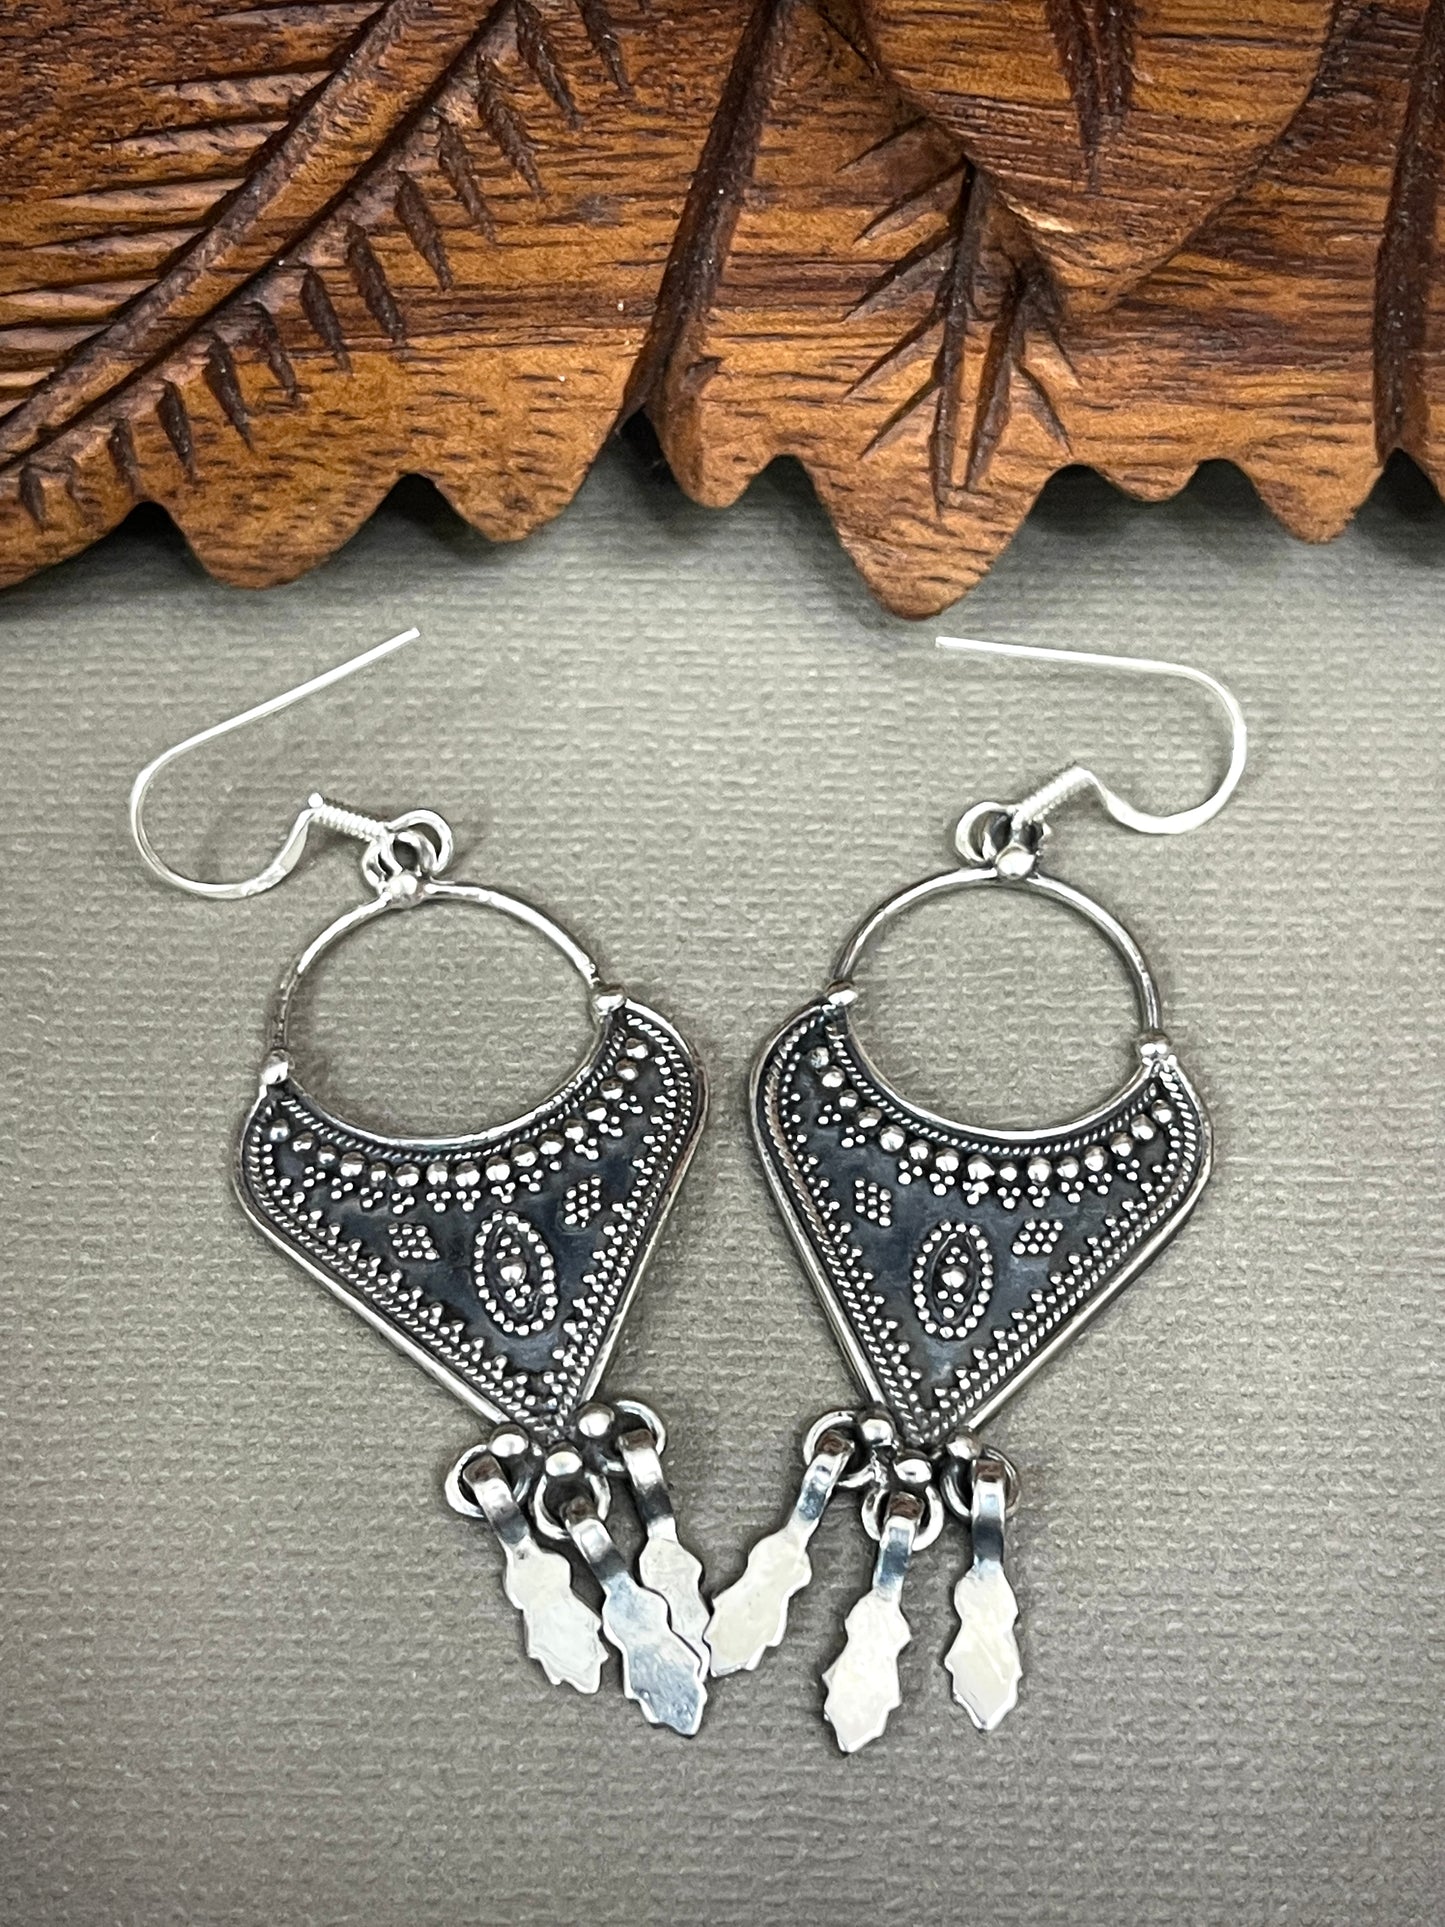 Sterling Silver Tribal Rajastani Earrings